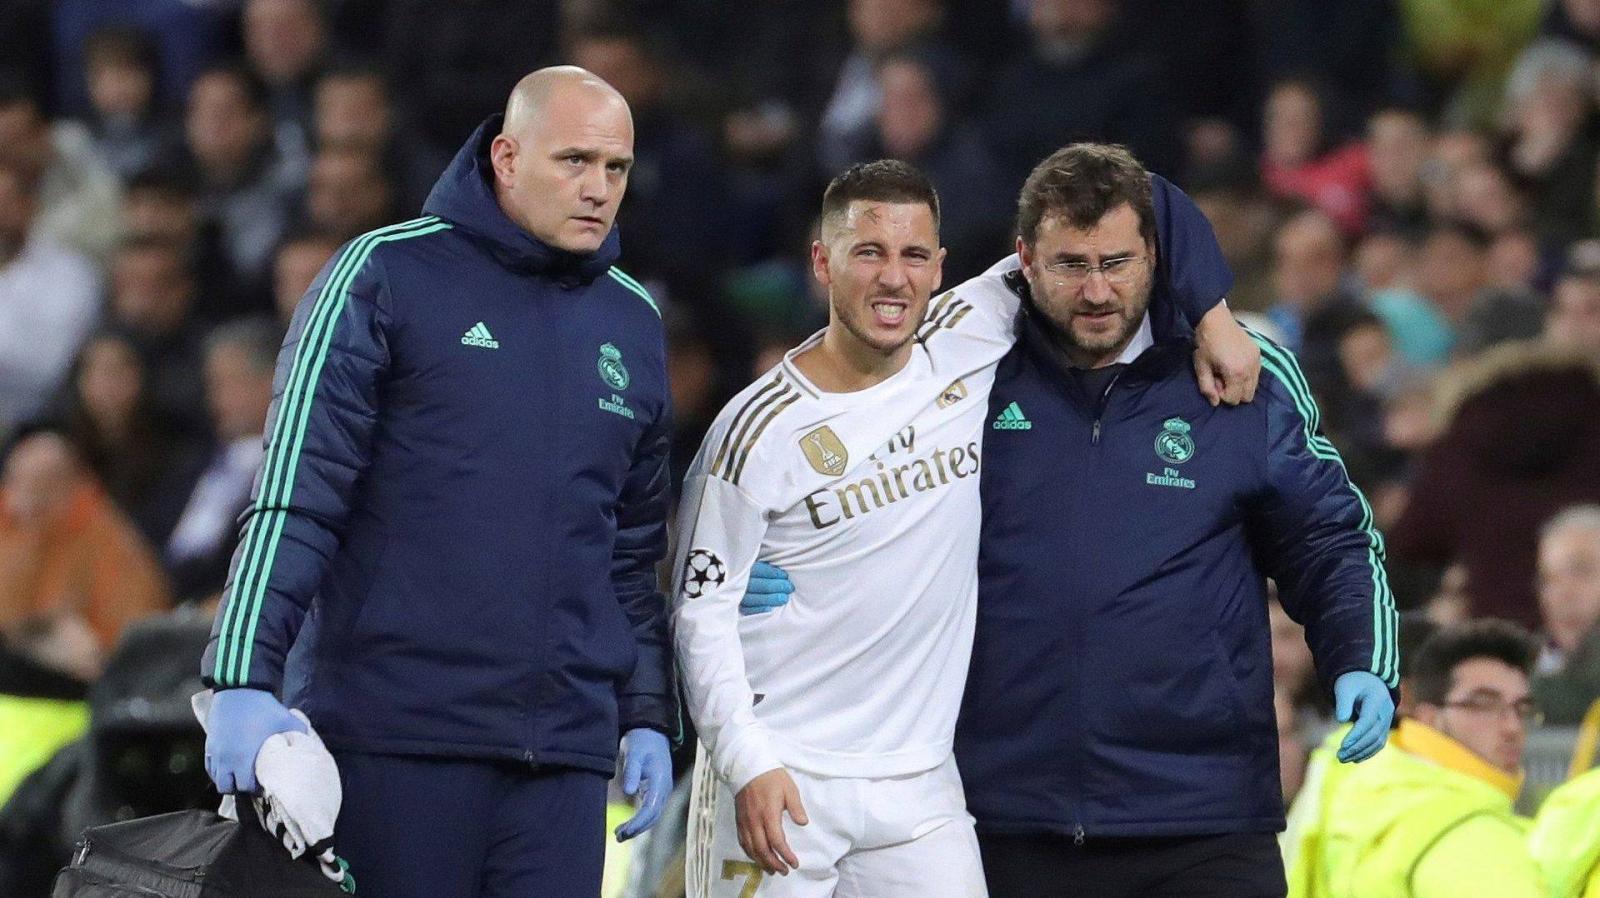 Imagen Hazard y las lesiones, algo recurrente en su paso por el Madrid. Estuvo más tiempo fuera de las canchas que dentro.